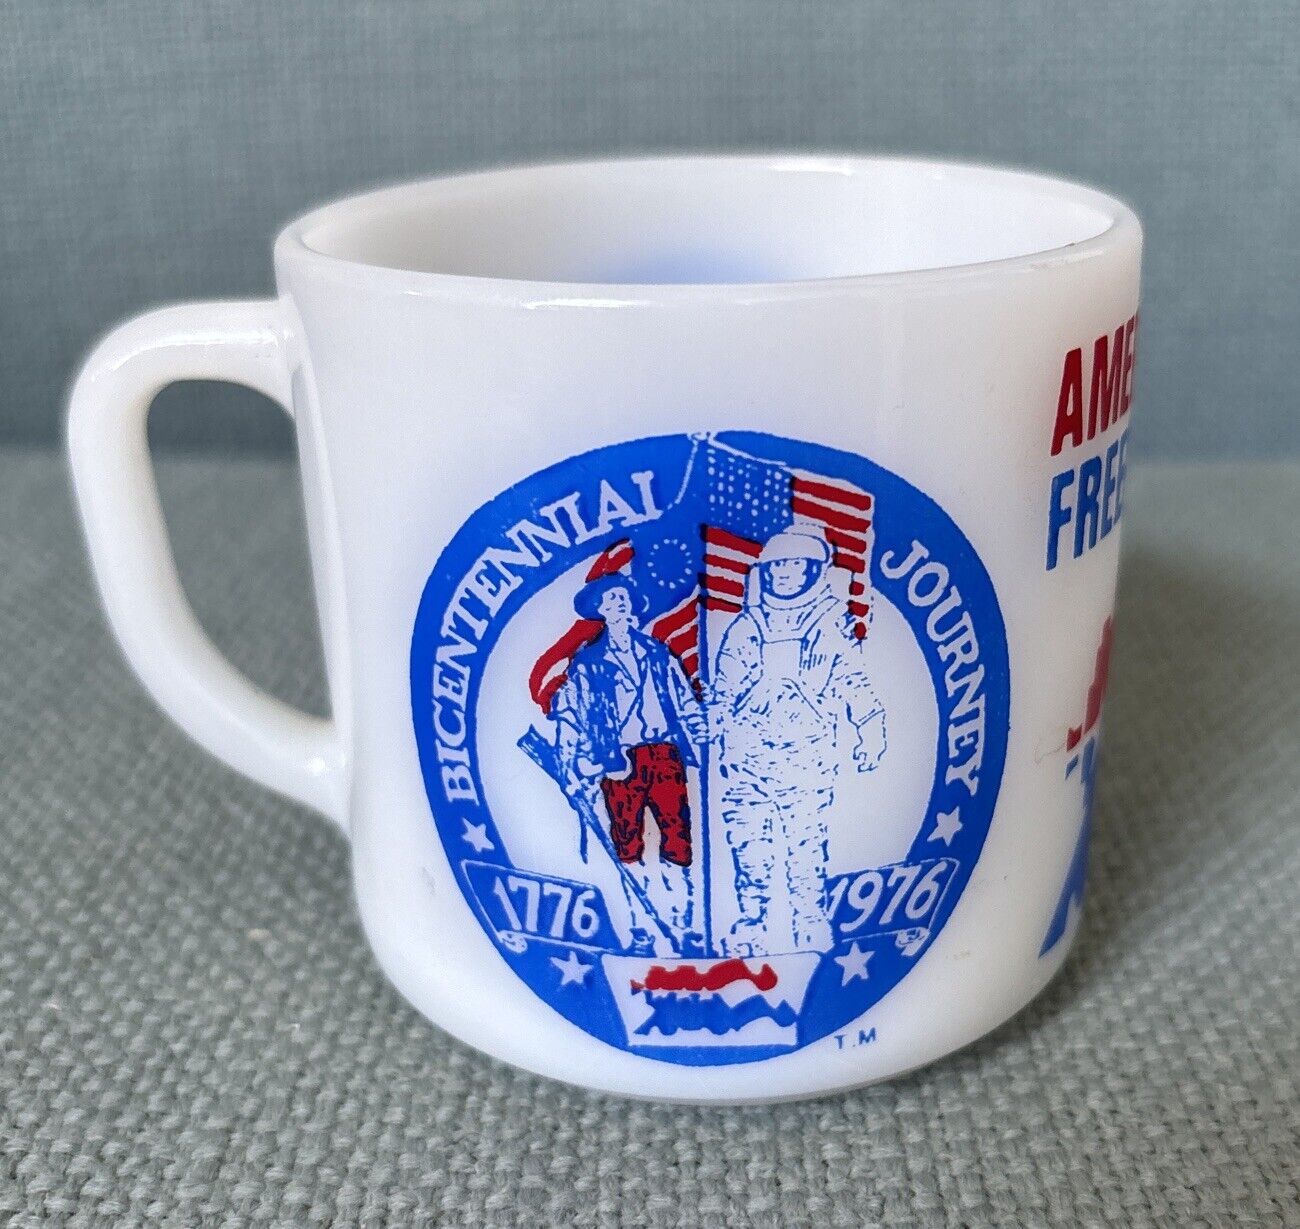 American Freedom Train Coffee Mug Cup 1976 Bicentennial Federal Milk Glass USA